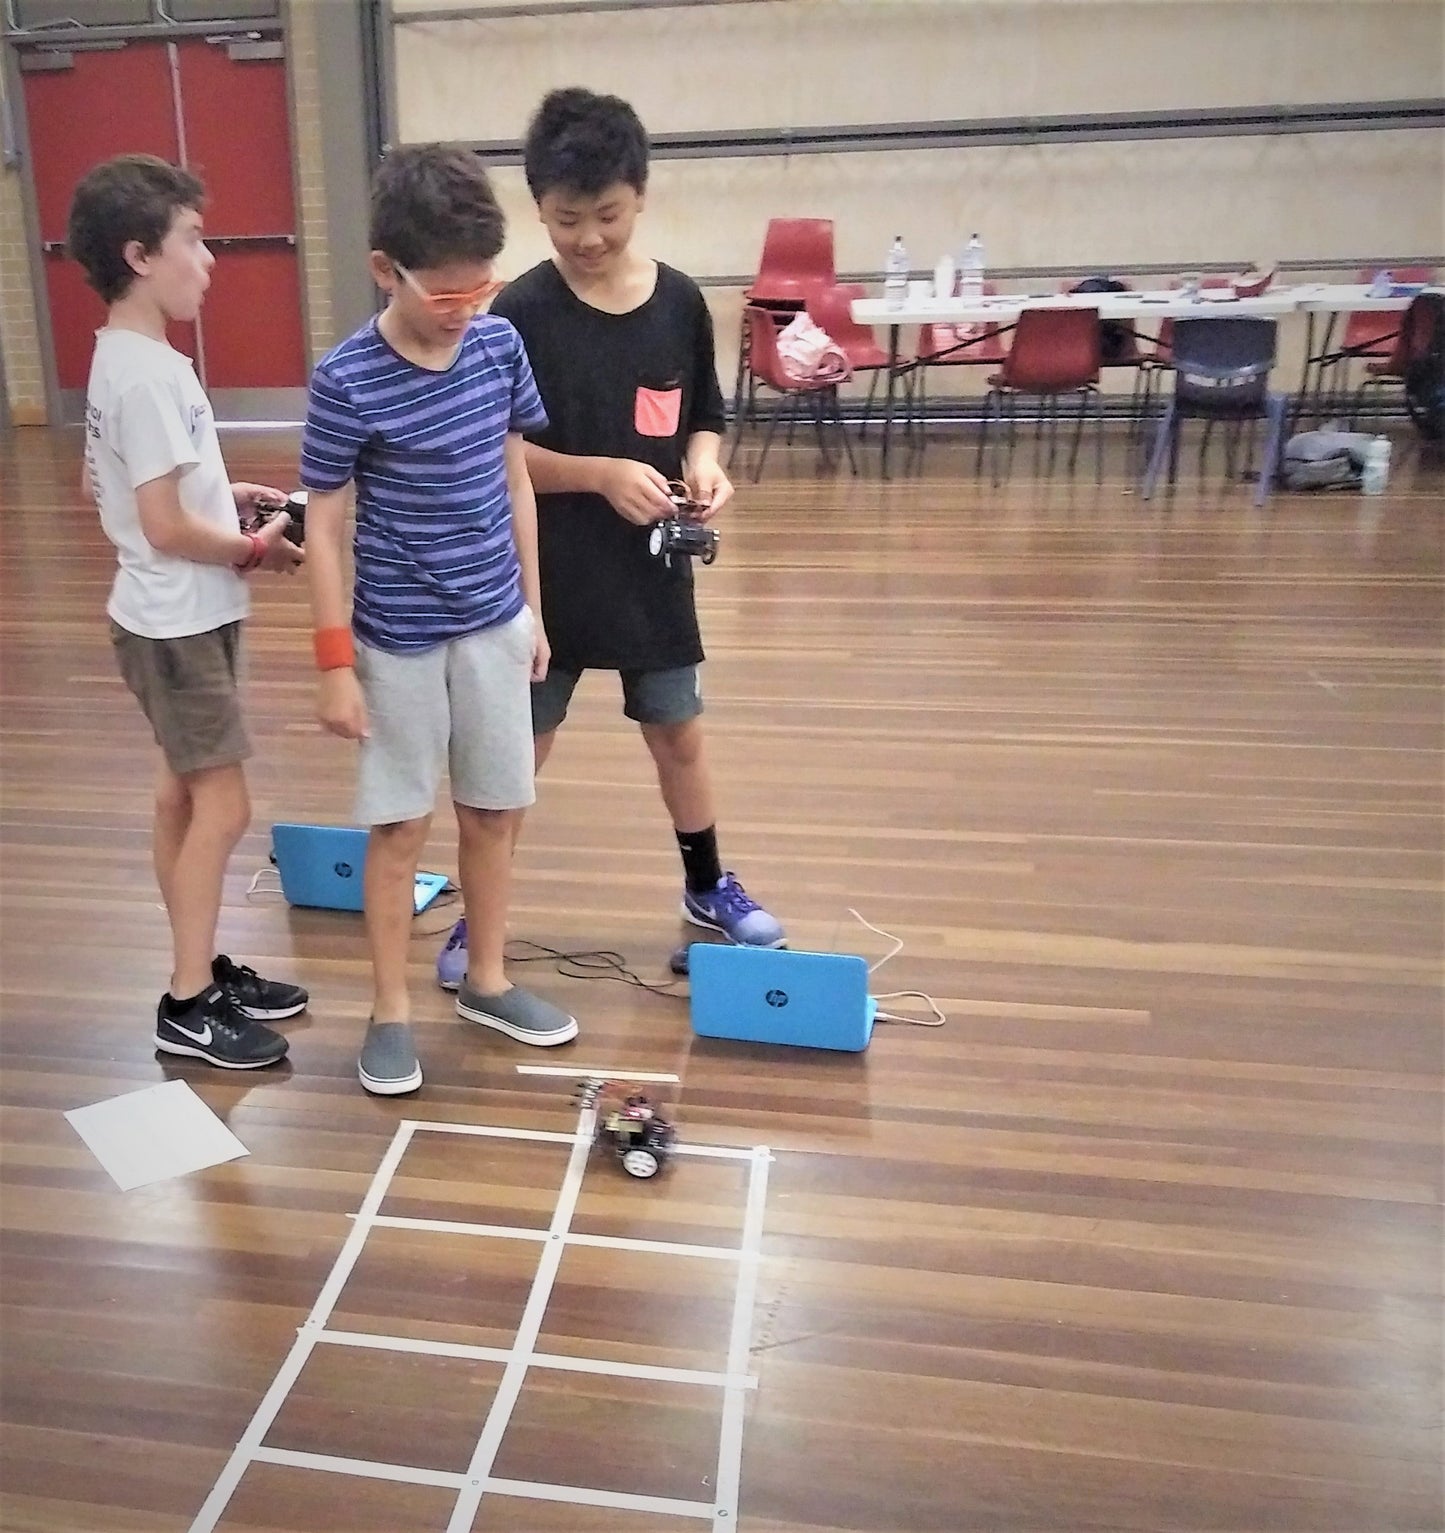 Robotics Classes for Kids in Enfield – Thinklum Robotics Club